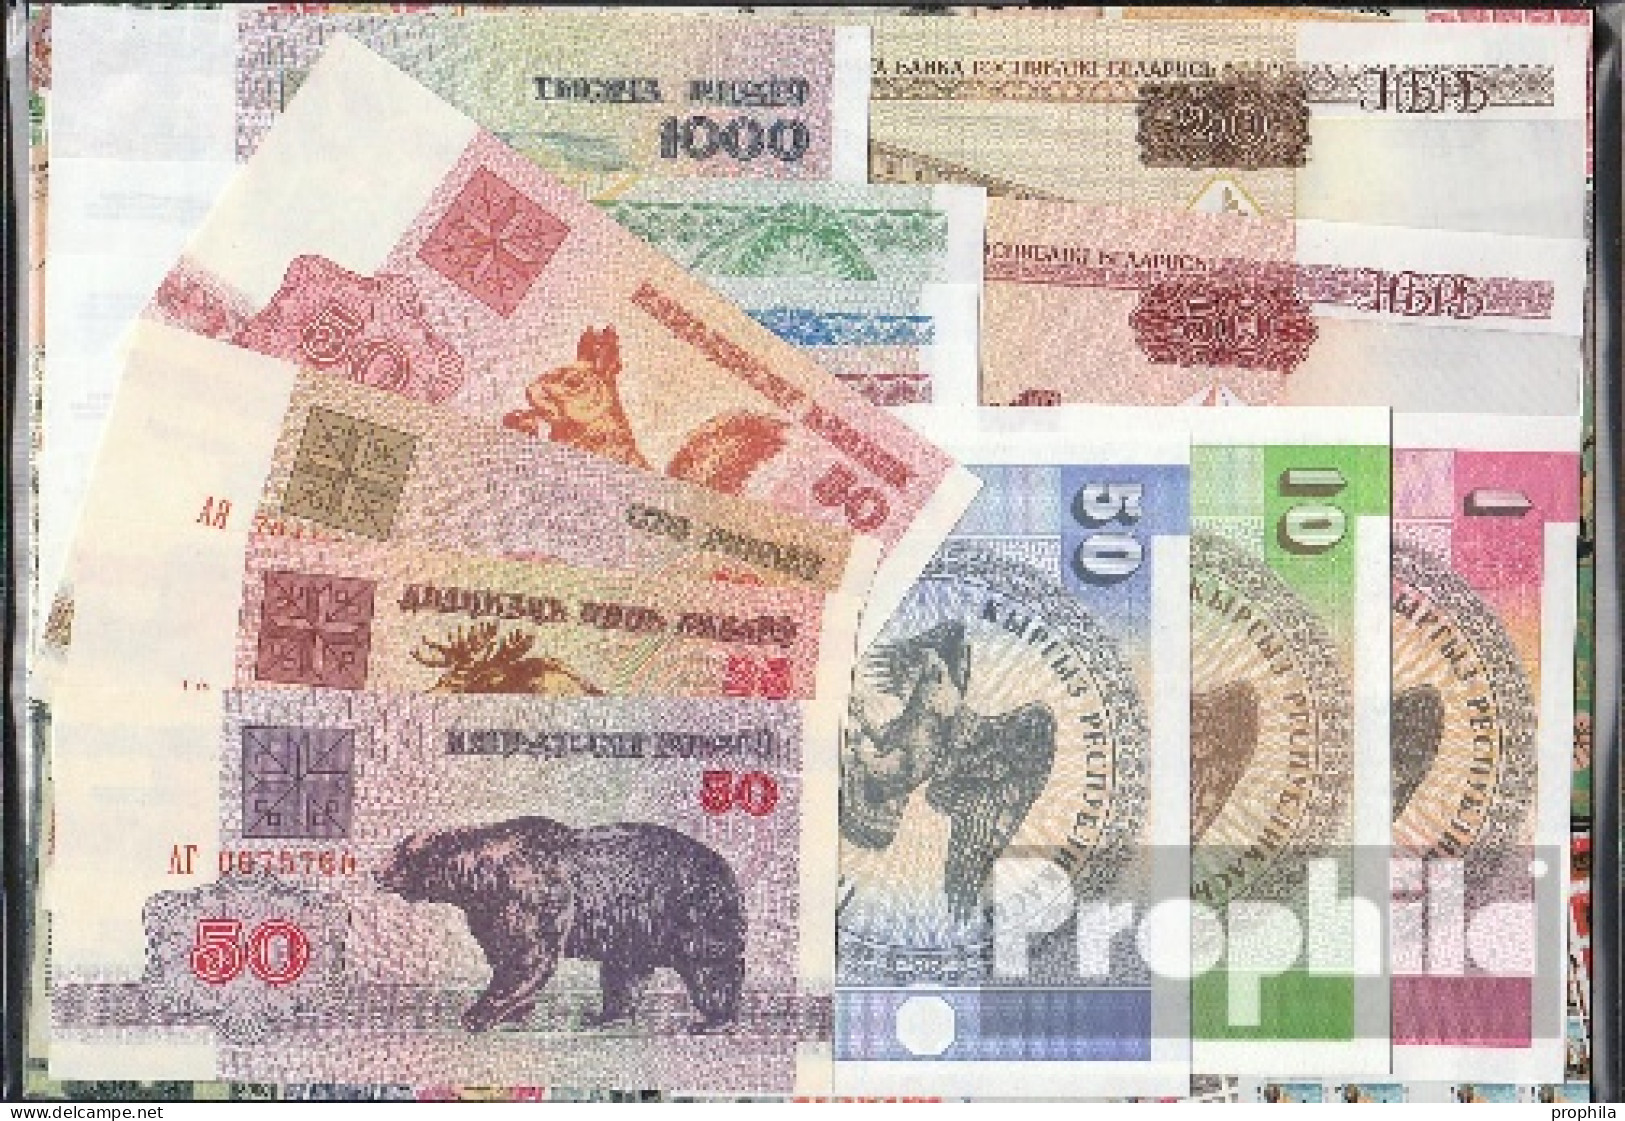 Ehemalige Sowjetunion Banknoten-15 Verschiedene Banknoten - Sammlungen